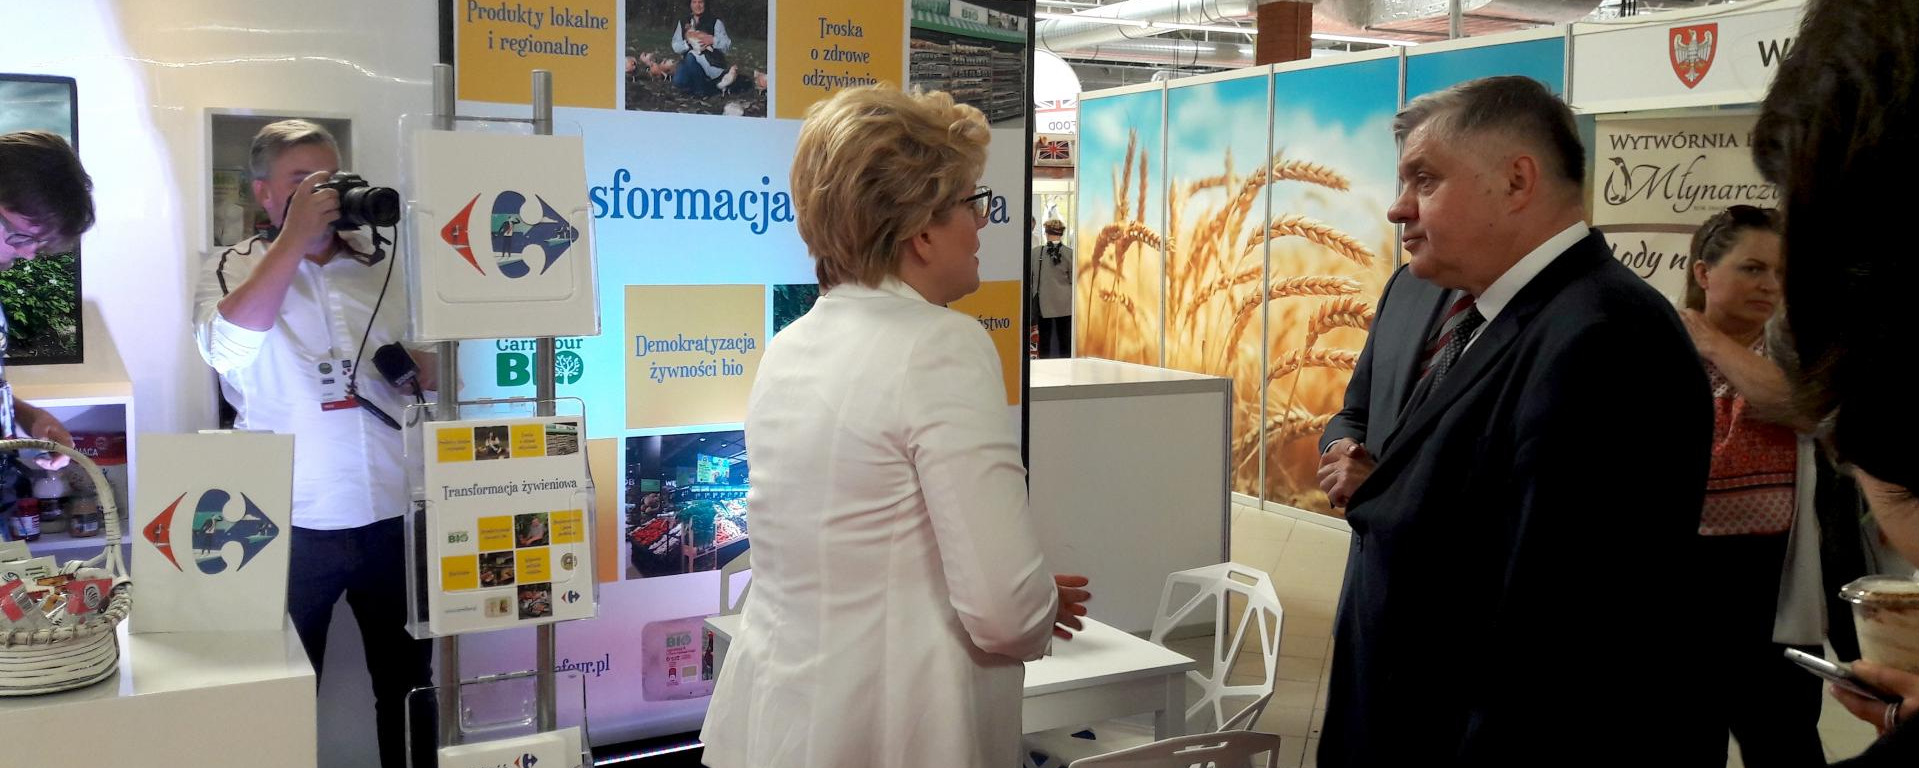 Carrefour Polska wystawcą podczas Warsaw Food Expo 2018